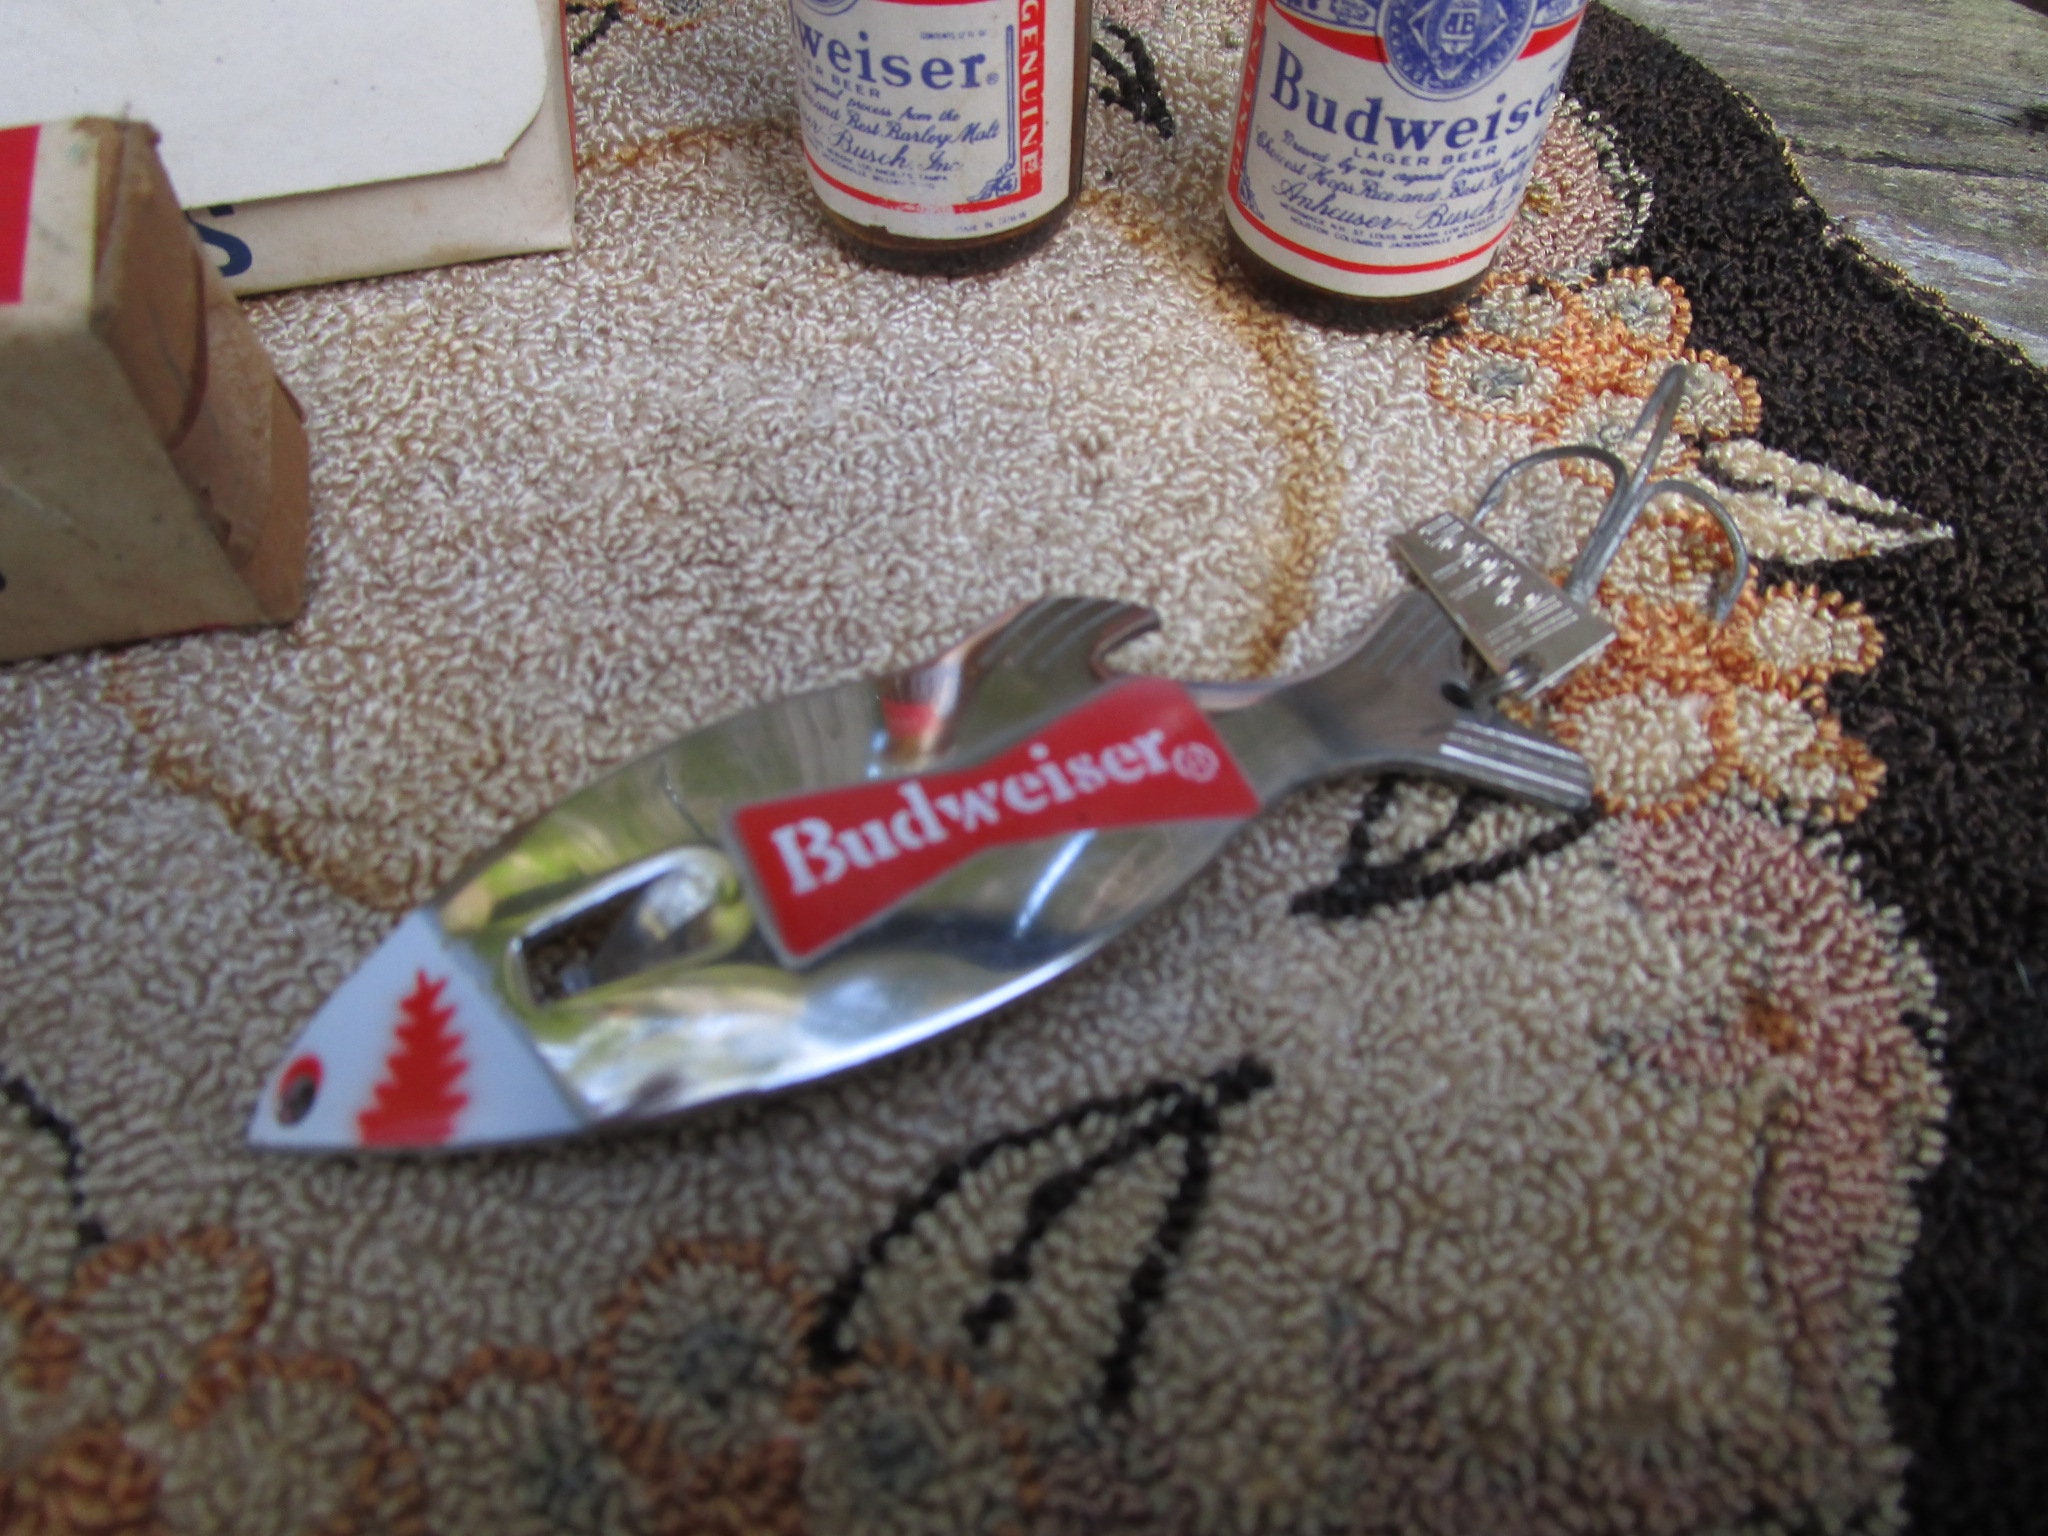 Vintage Budweiser Fishing Lure Budweiser Growler Heddon Lure Budweiser  Bottle Opener Fishing Lure 